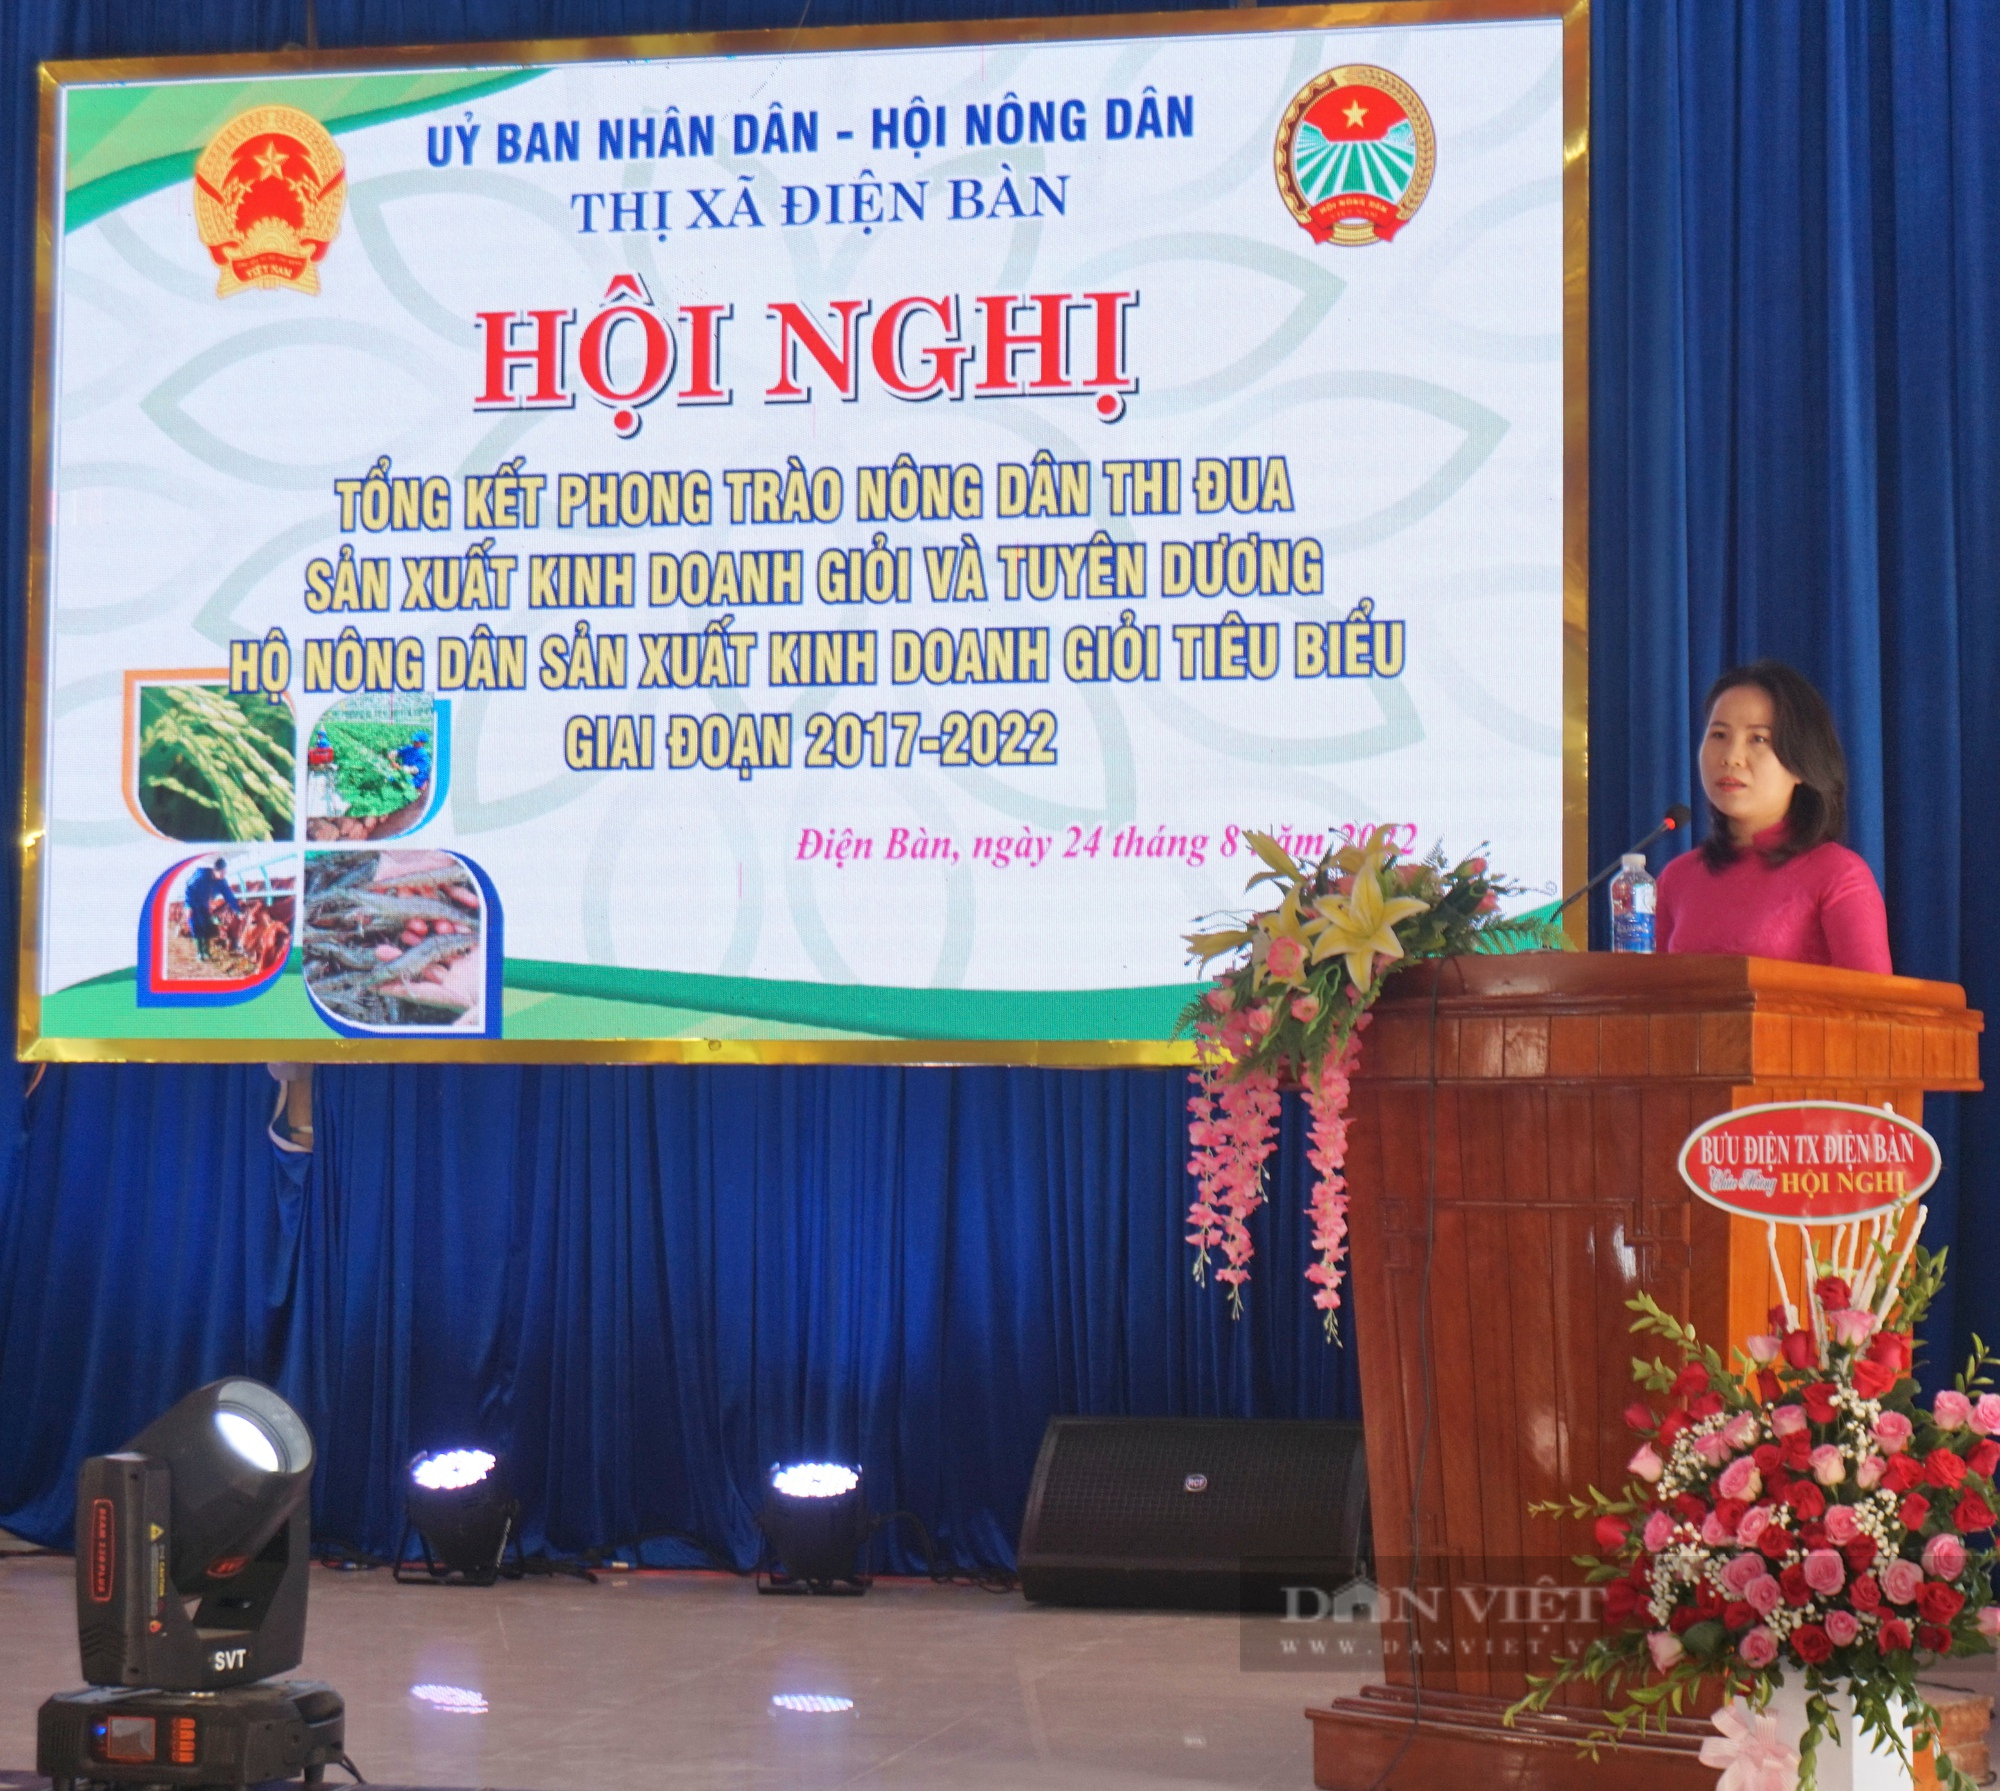 Quảng Nam: Phong trào Nông dân sản xuất kinh doanh giỏi góp phần giúp Điện Bàn chuyển dịch cơ cấu kinh tế nhanh, bền vững - Ảnh 2.